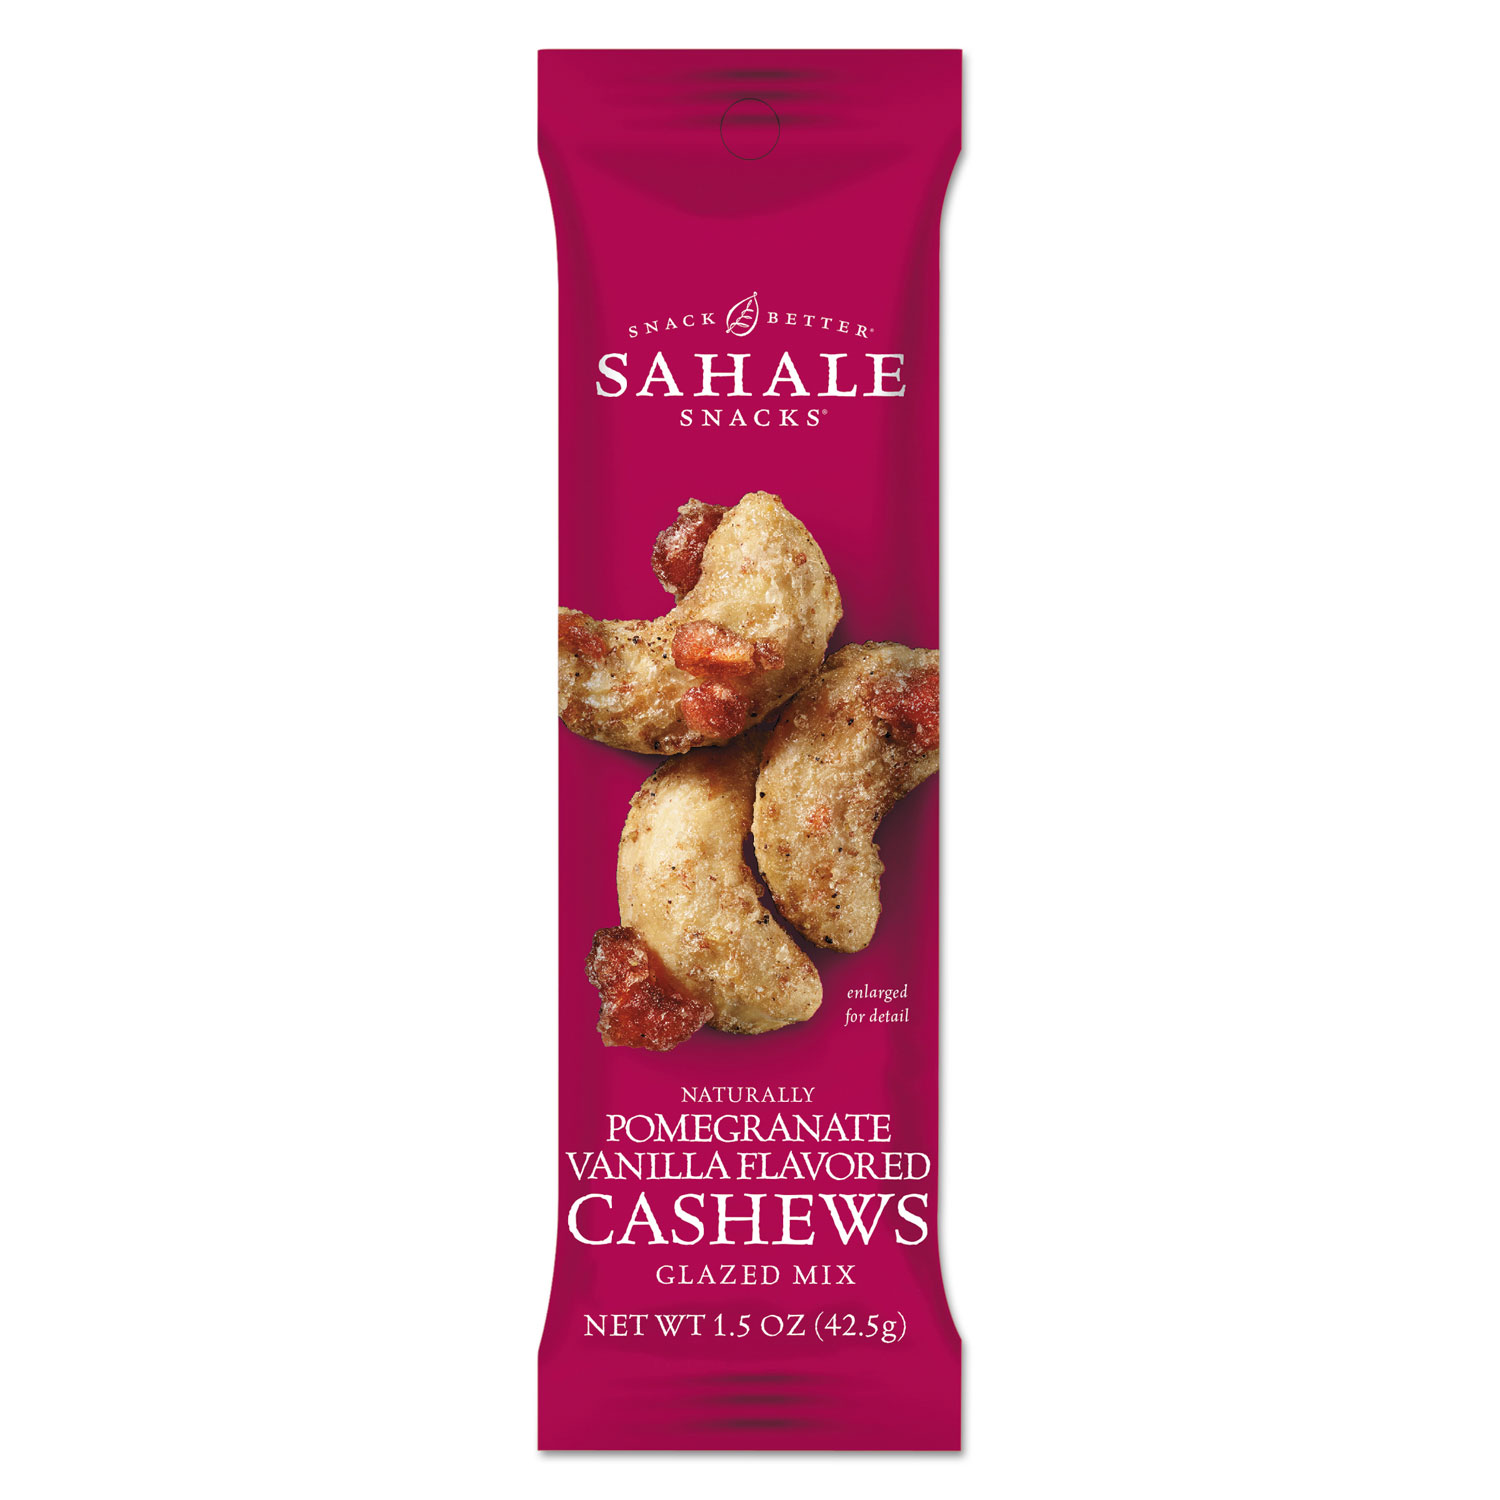  Sahale Snacks 9386900021 Glazed Mixes, Cashew Pom Vanilla, 1.5 oz, 18/Carton (SMU900021) 